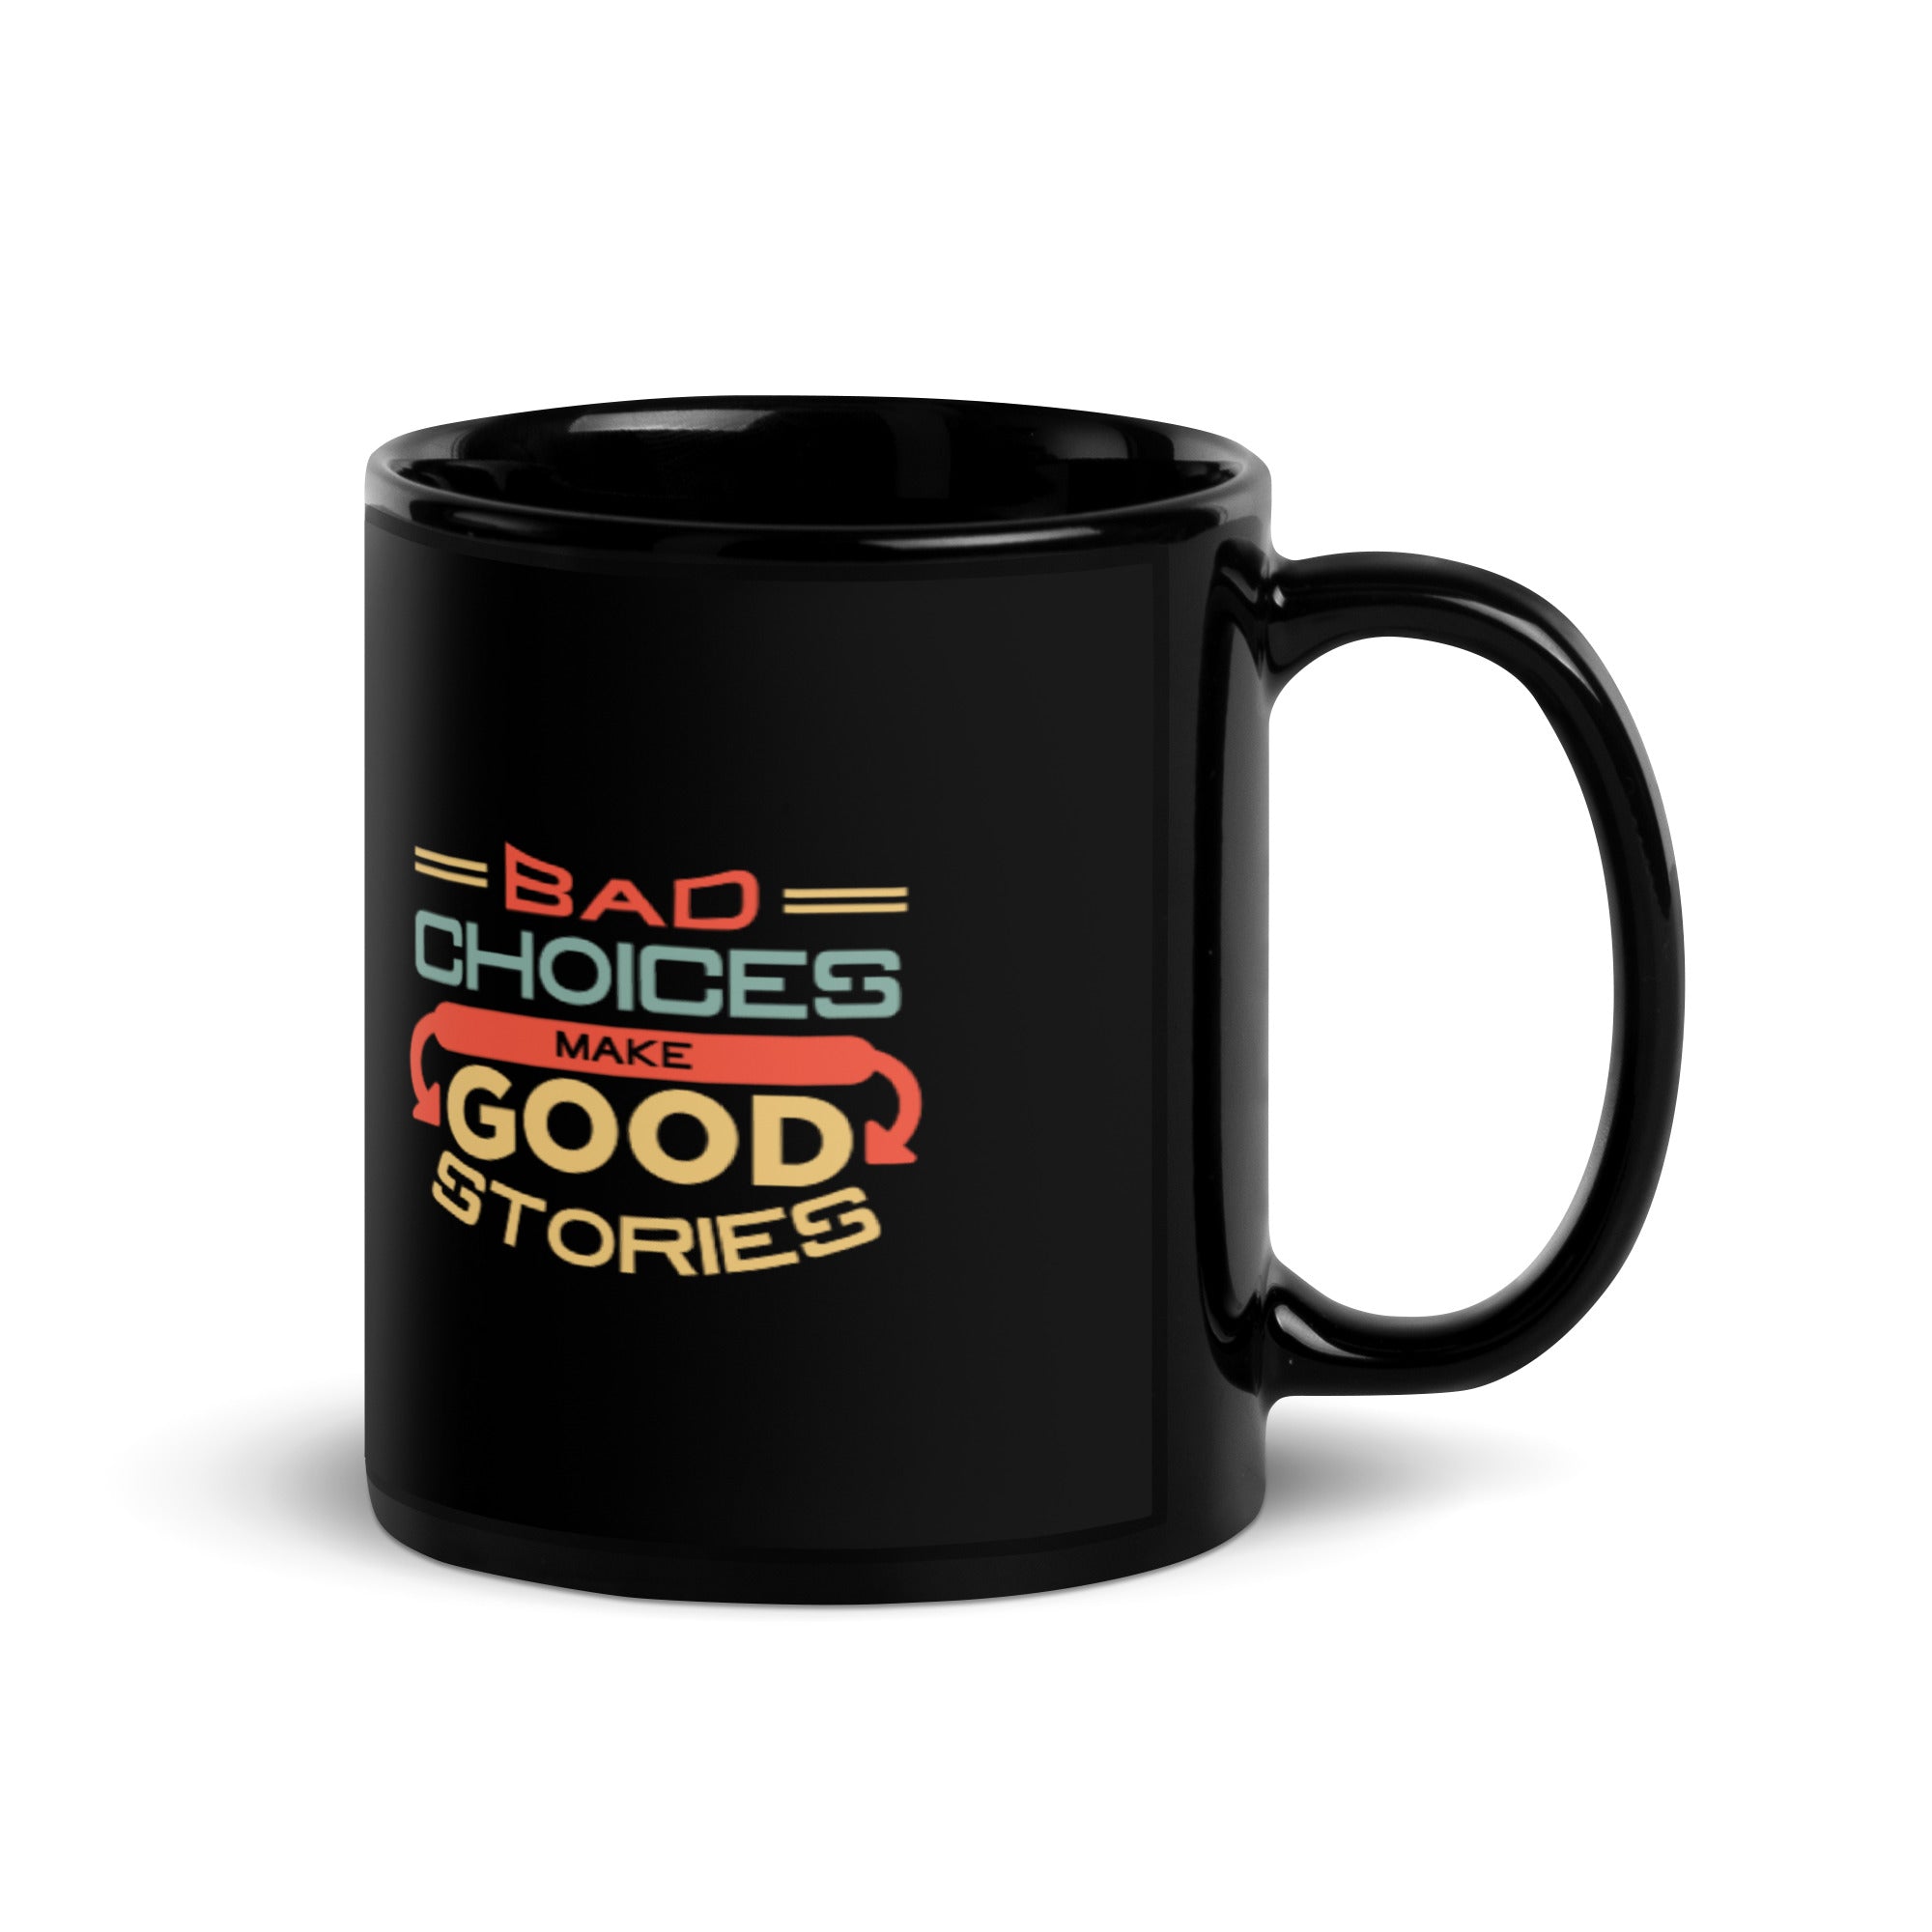 Bad Choices Make Good Stories - Black Glossy Mug